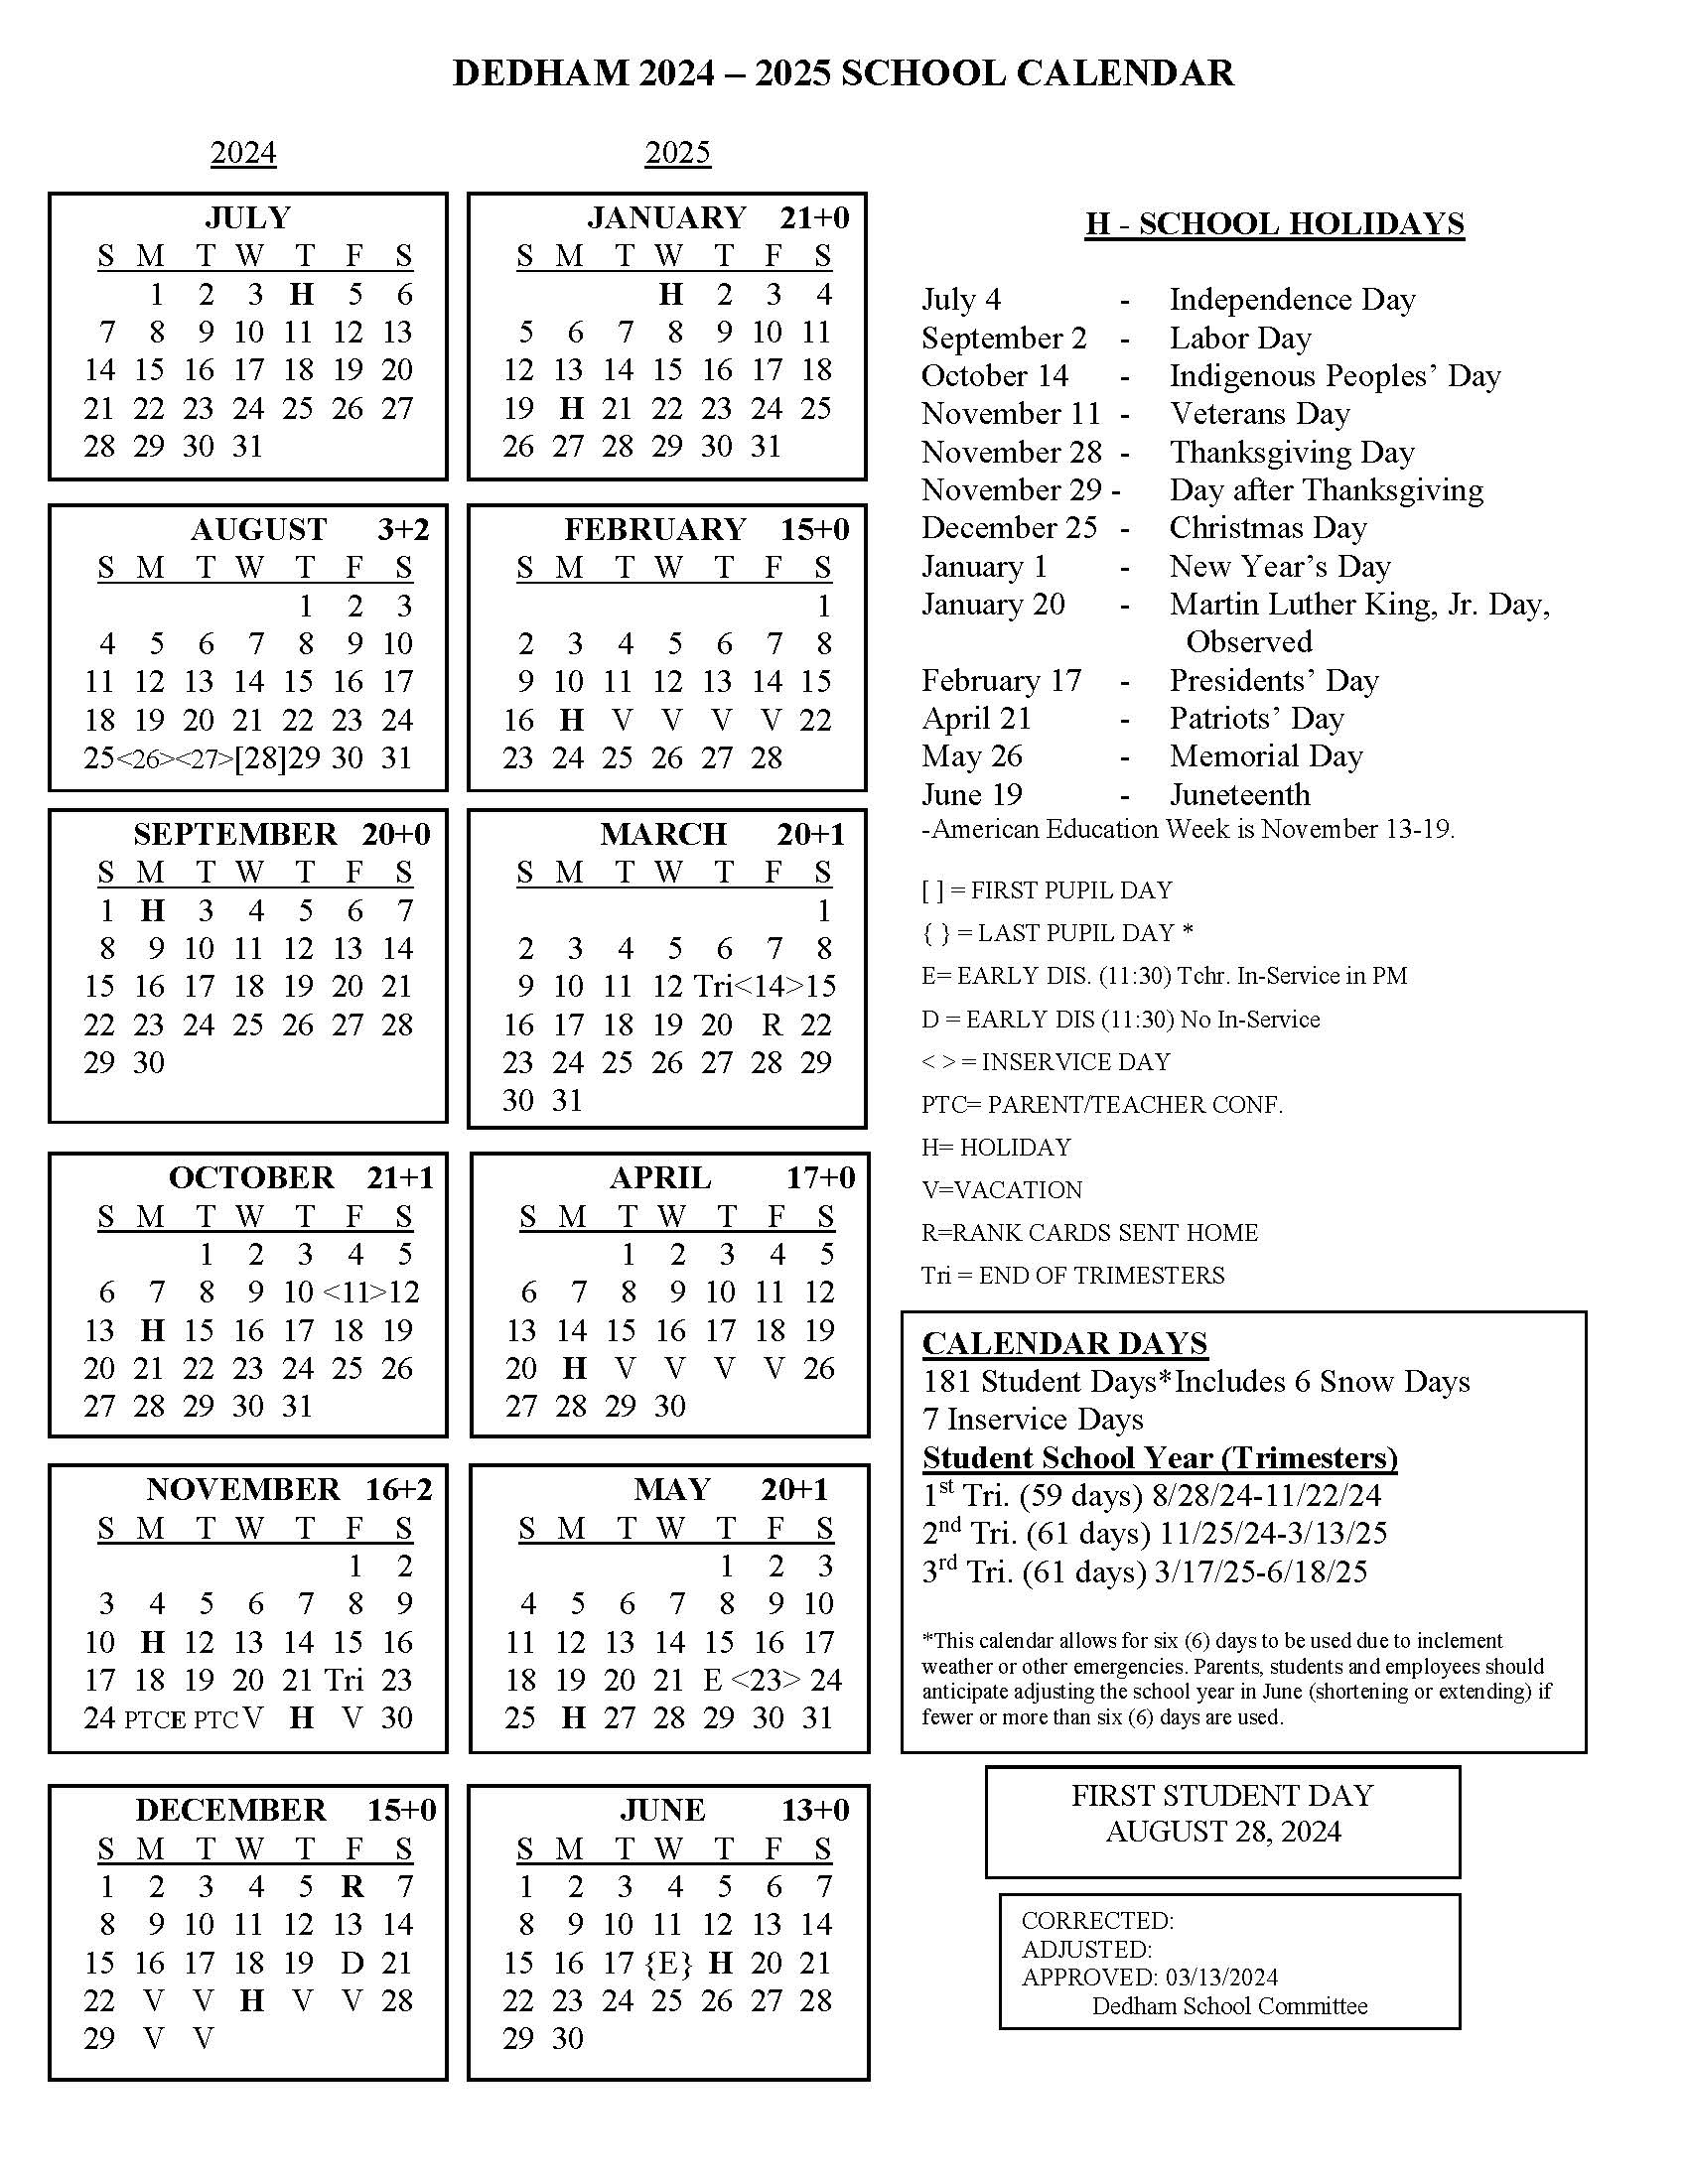 School Year Calendar